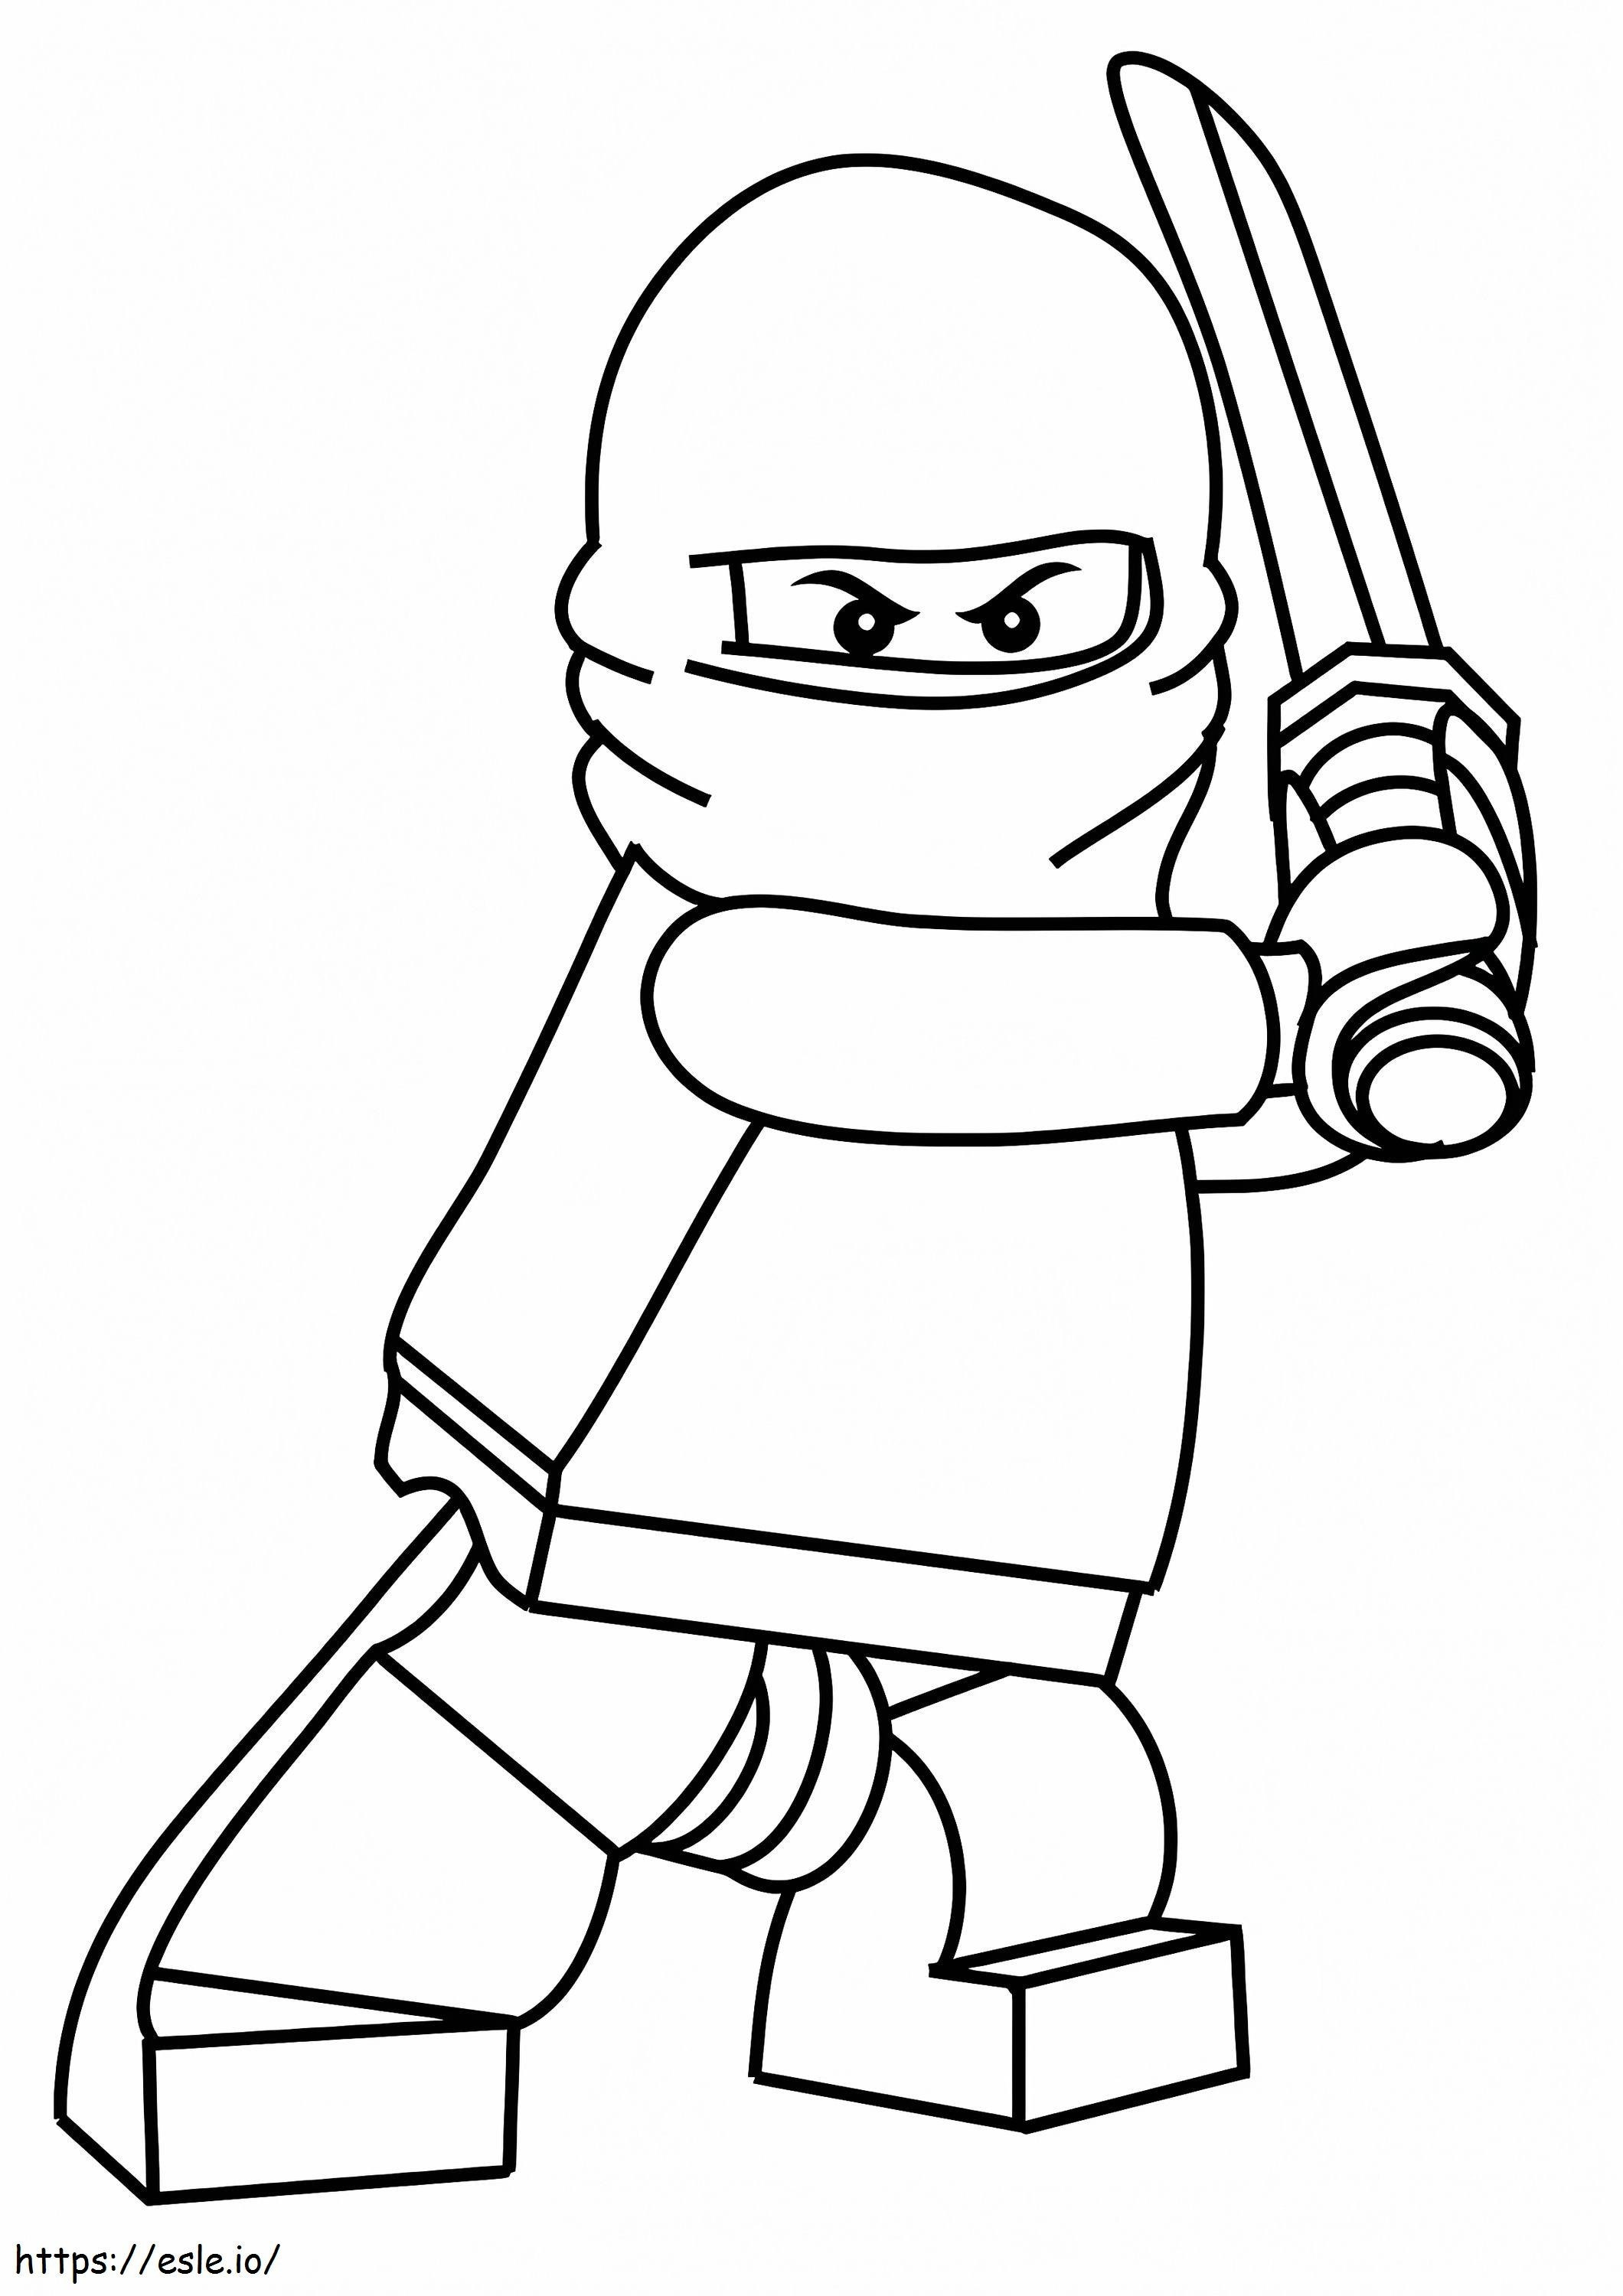  Der kleine Ninja mit Maske A4 ausmalbilder